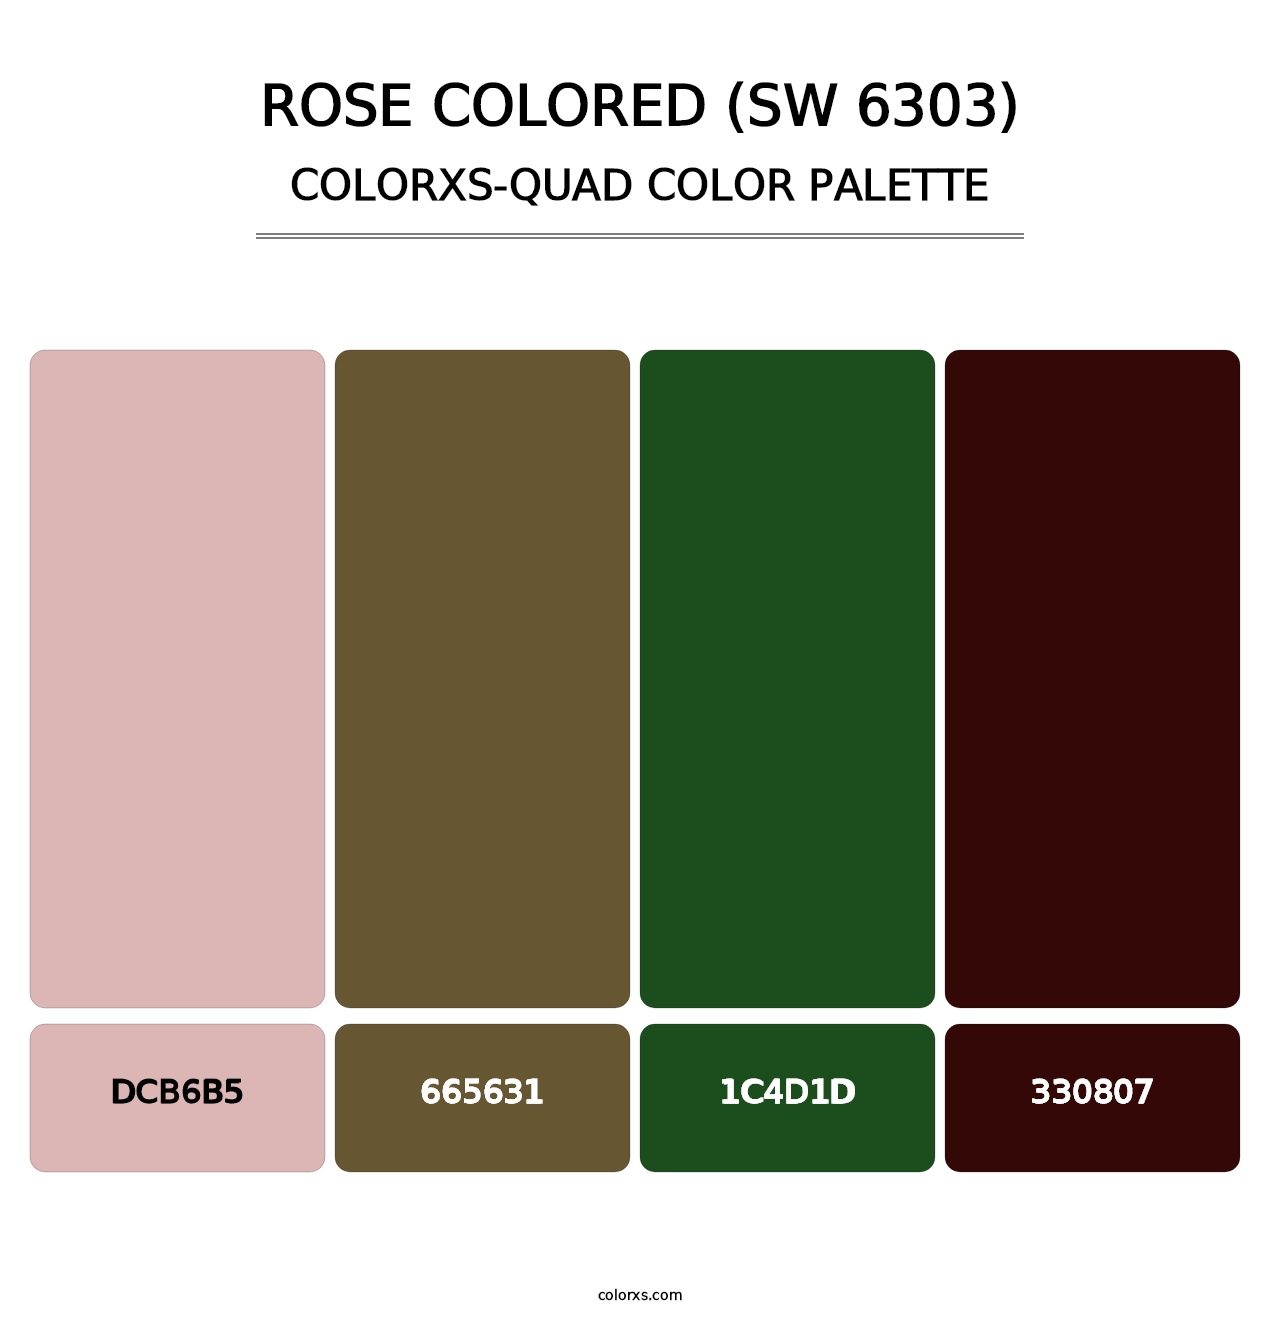 Rose Colored (SW 6303) - Colorxs Quad Palette